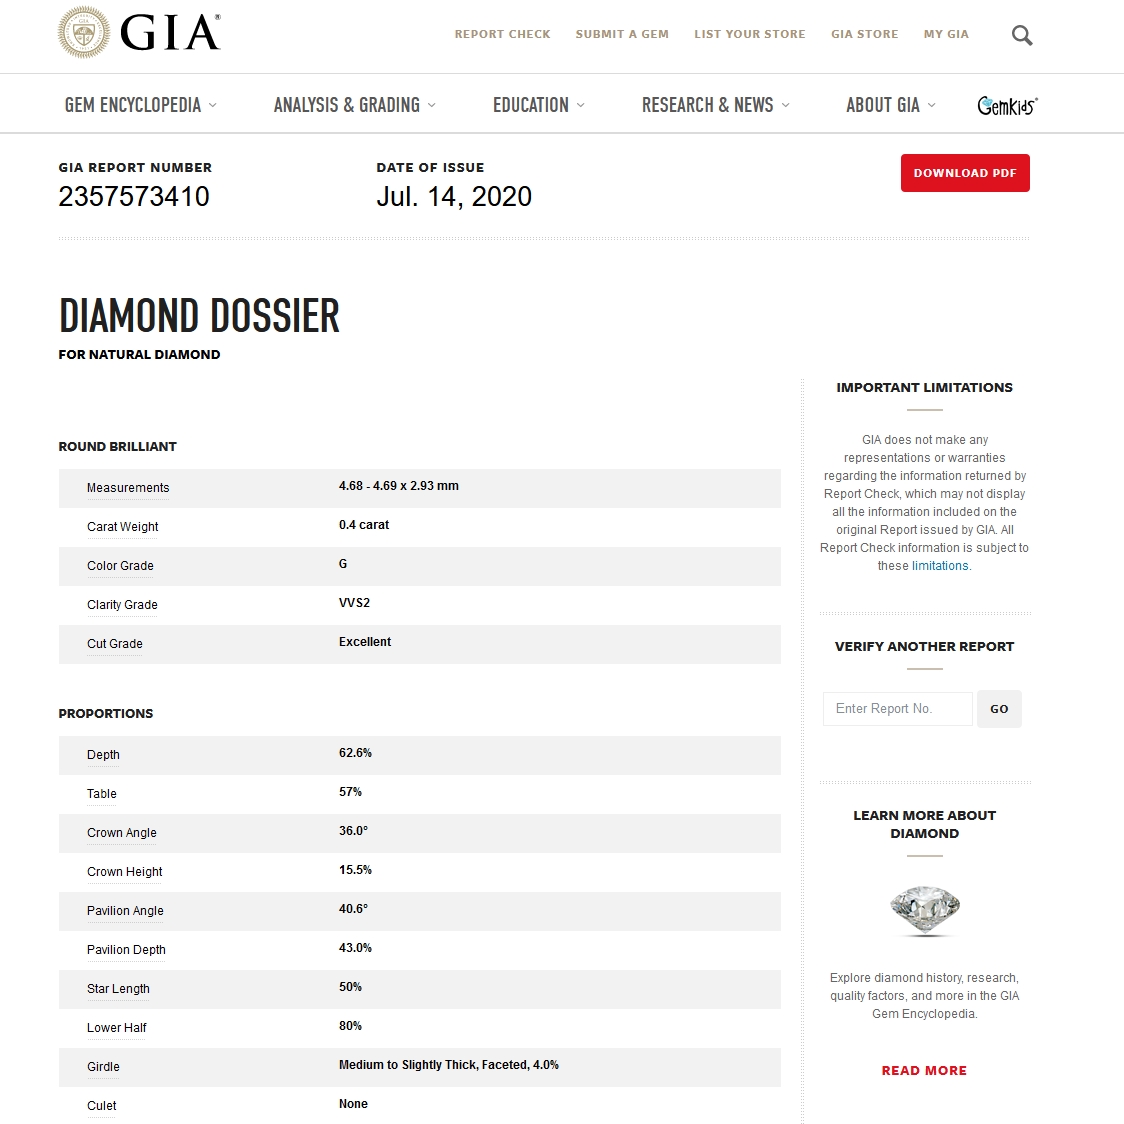 Diamante Naturale Certificato GIA Kt. 0,40 Colore G Purezza VVS2